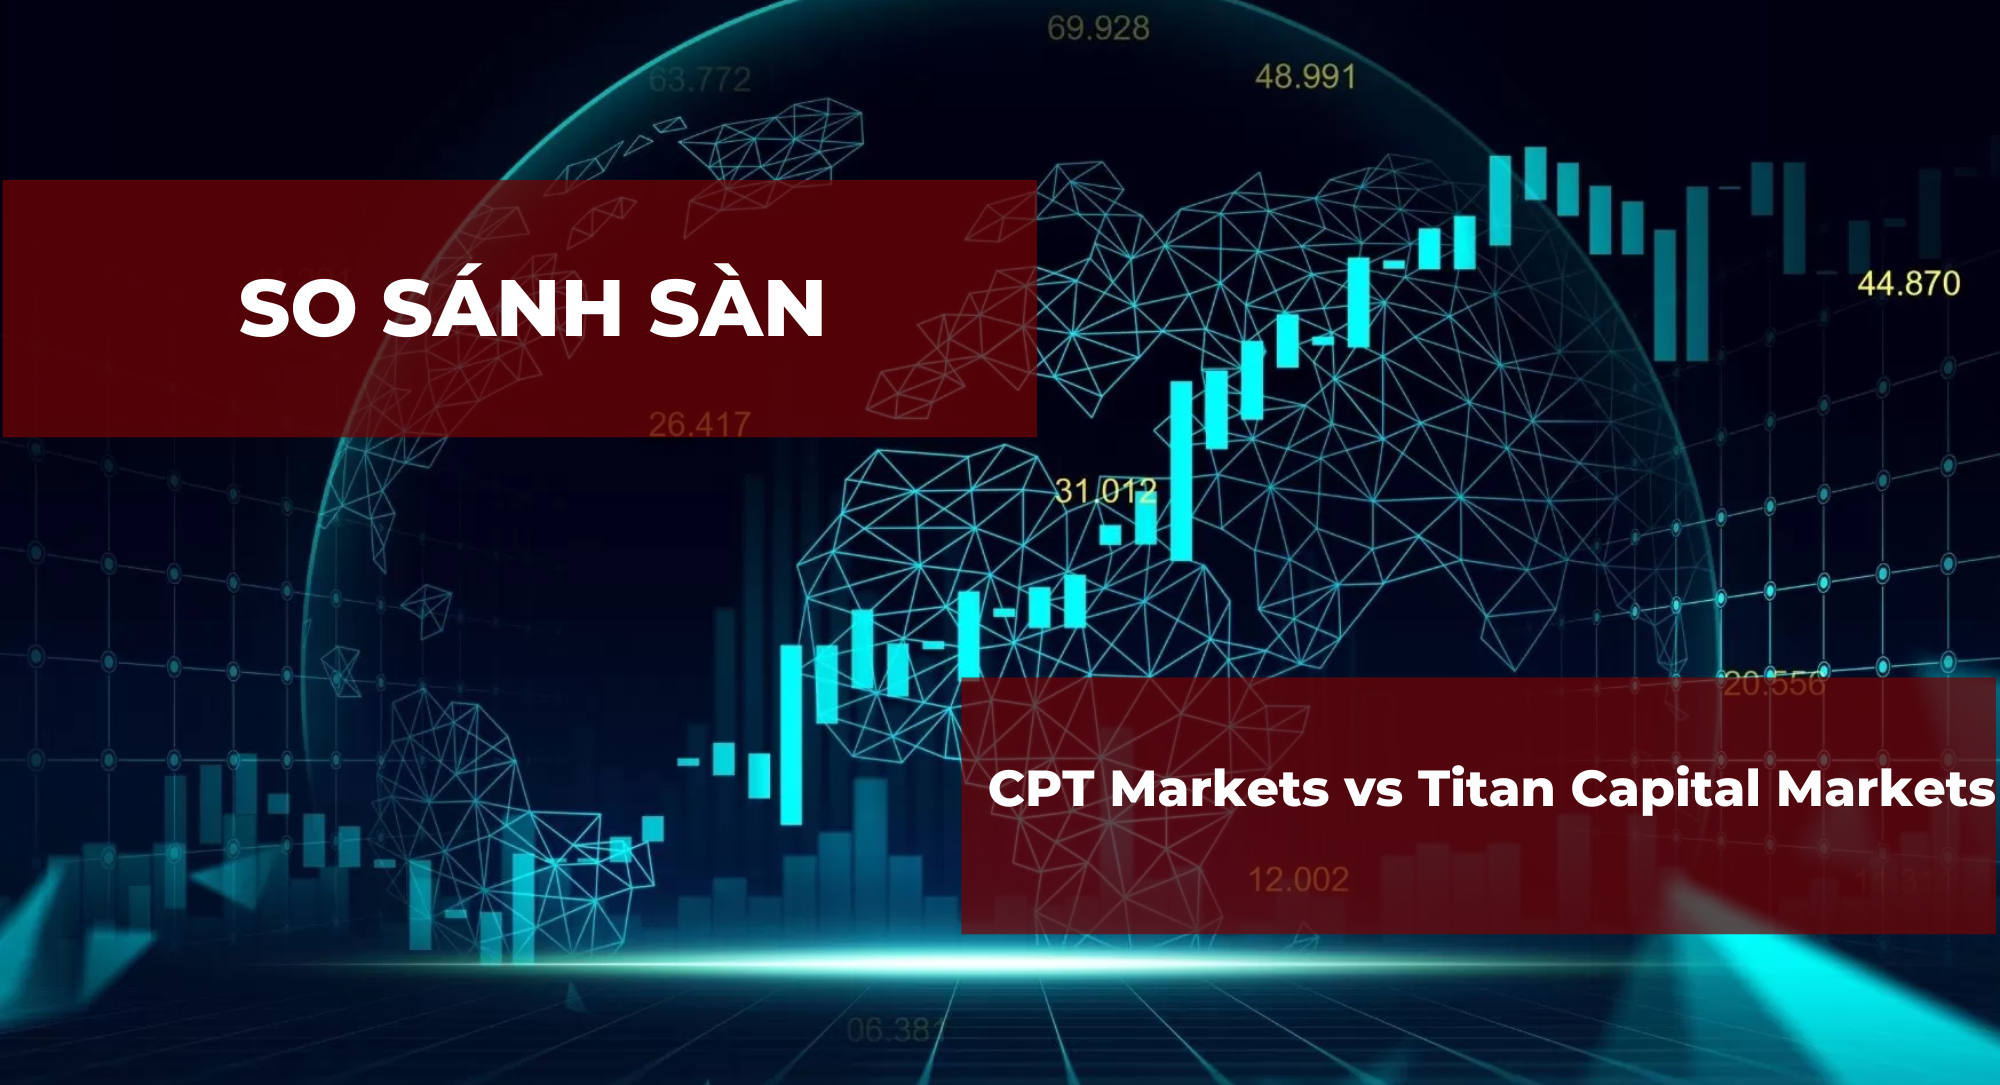 So sánh sàn CPT Markets và Titan Capital Markets chi tiết